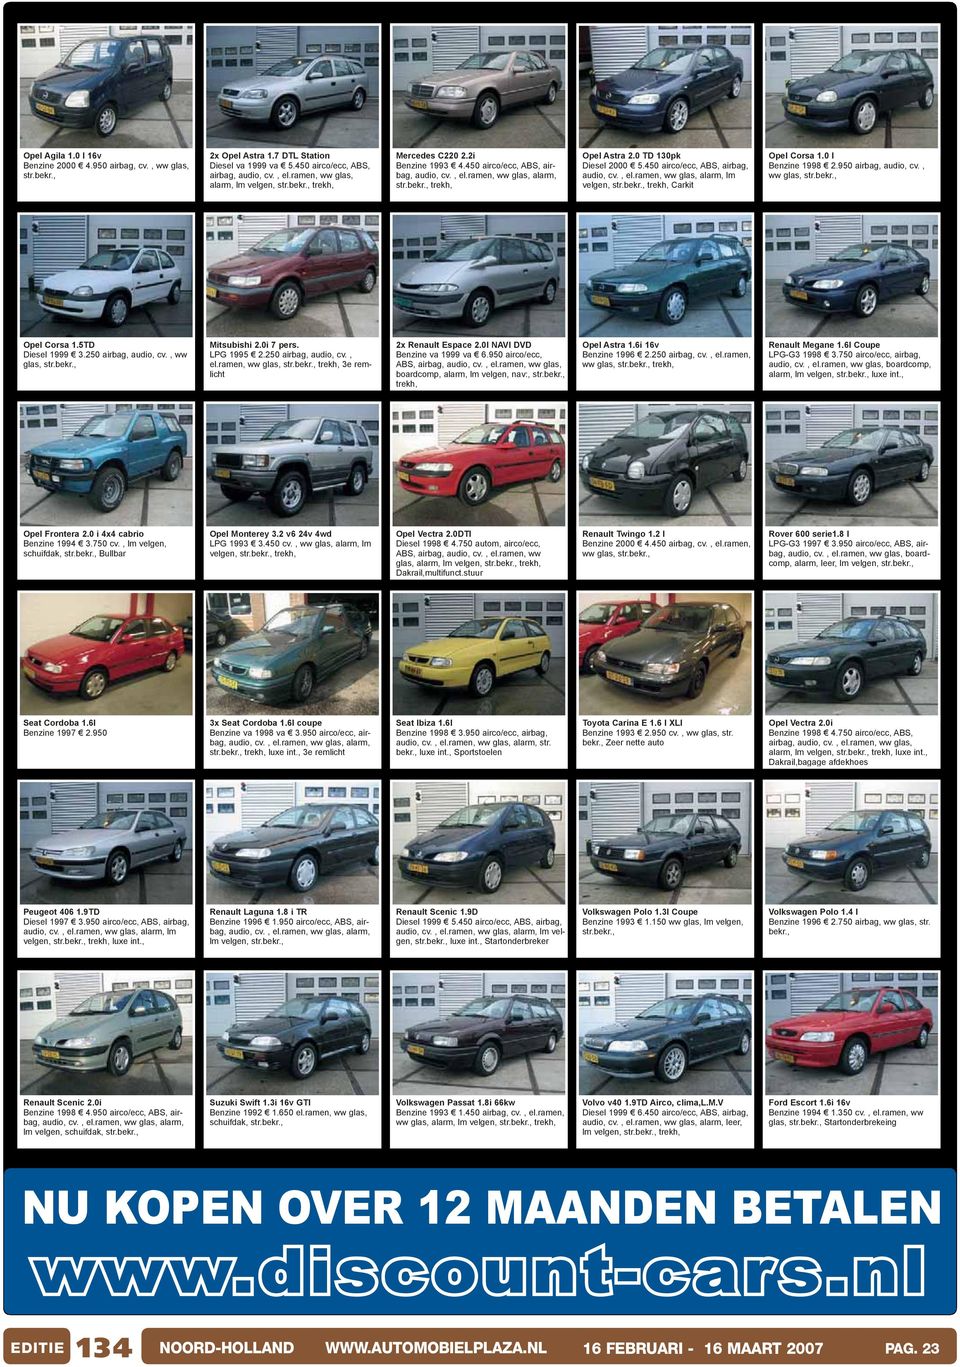 950 airbag, audio, cv., ww glas, str. Opel Corsa 1.5TD Diesel 1999 3.250 airbag, audio, cv., ww glas, str. Mitsubishi 2.0i 7 pers. LPG 1995 2.250 airbag, audio, cv., el.ramen, ww glas, str.